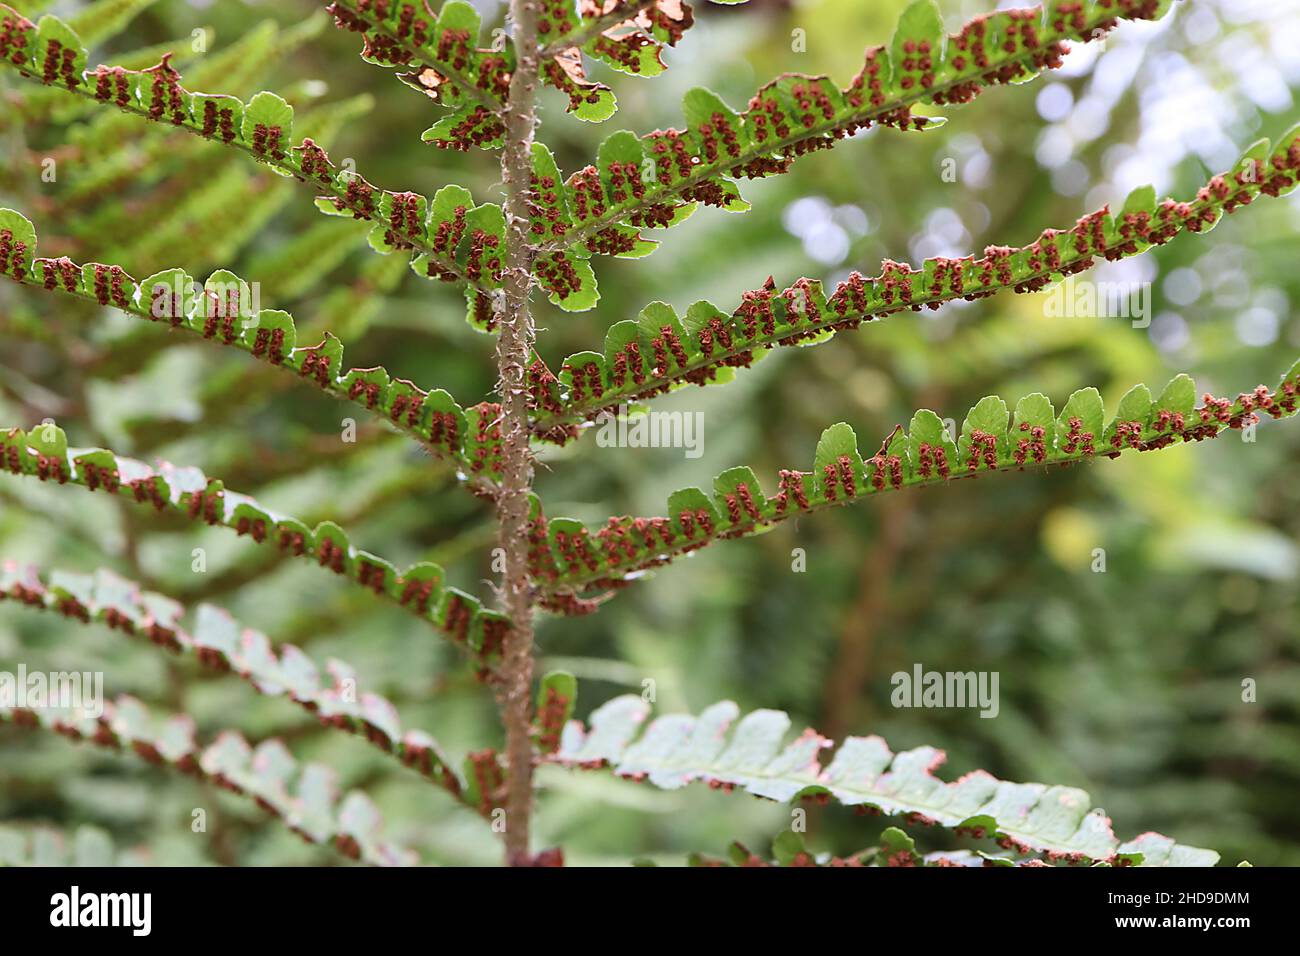 Dryopteris affinis scaly maschio felce – verde brillante bipinnate frontali con margini dentati, circolare spore marrone sul lato inferiore, dicembre, Inghilterra, Regno Unito Foto Stock